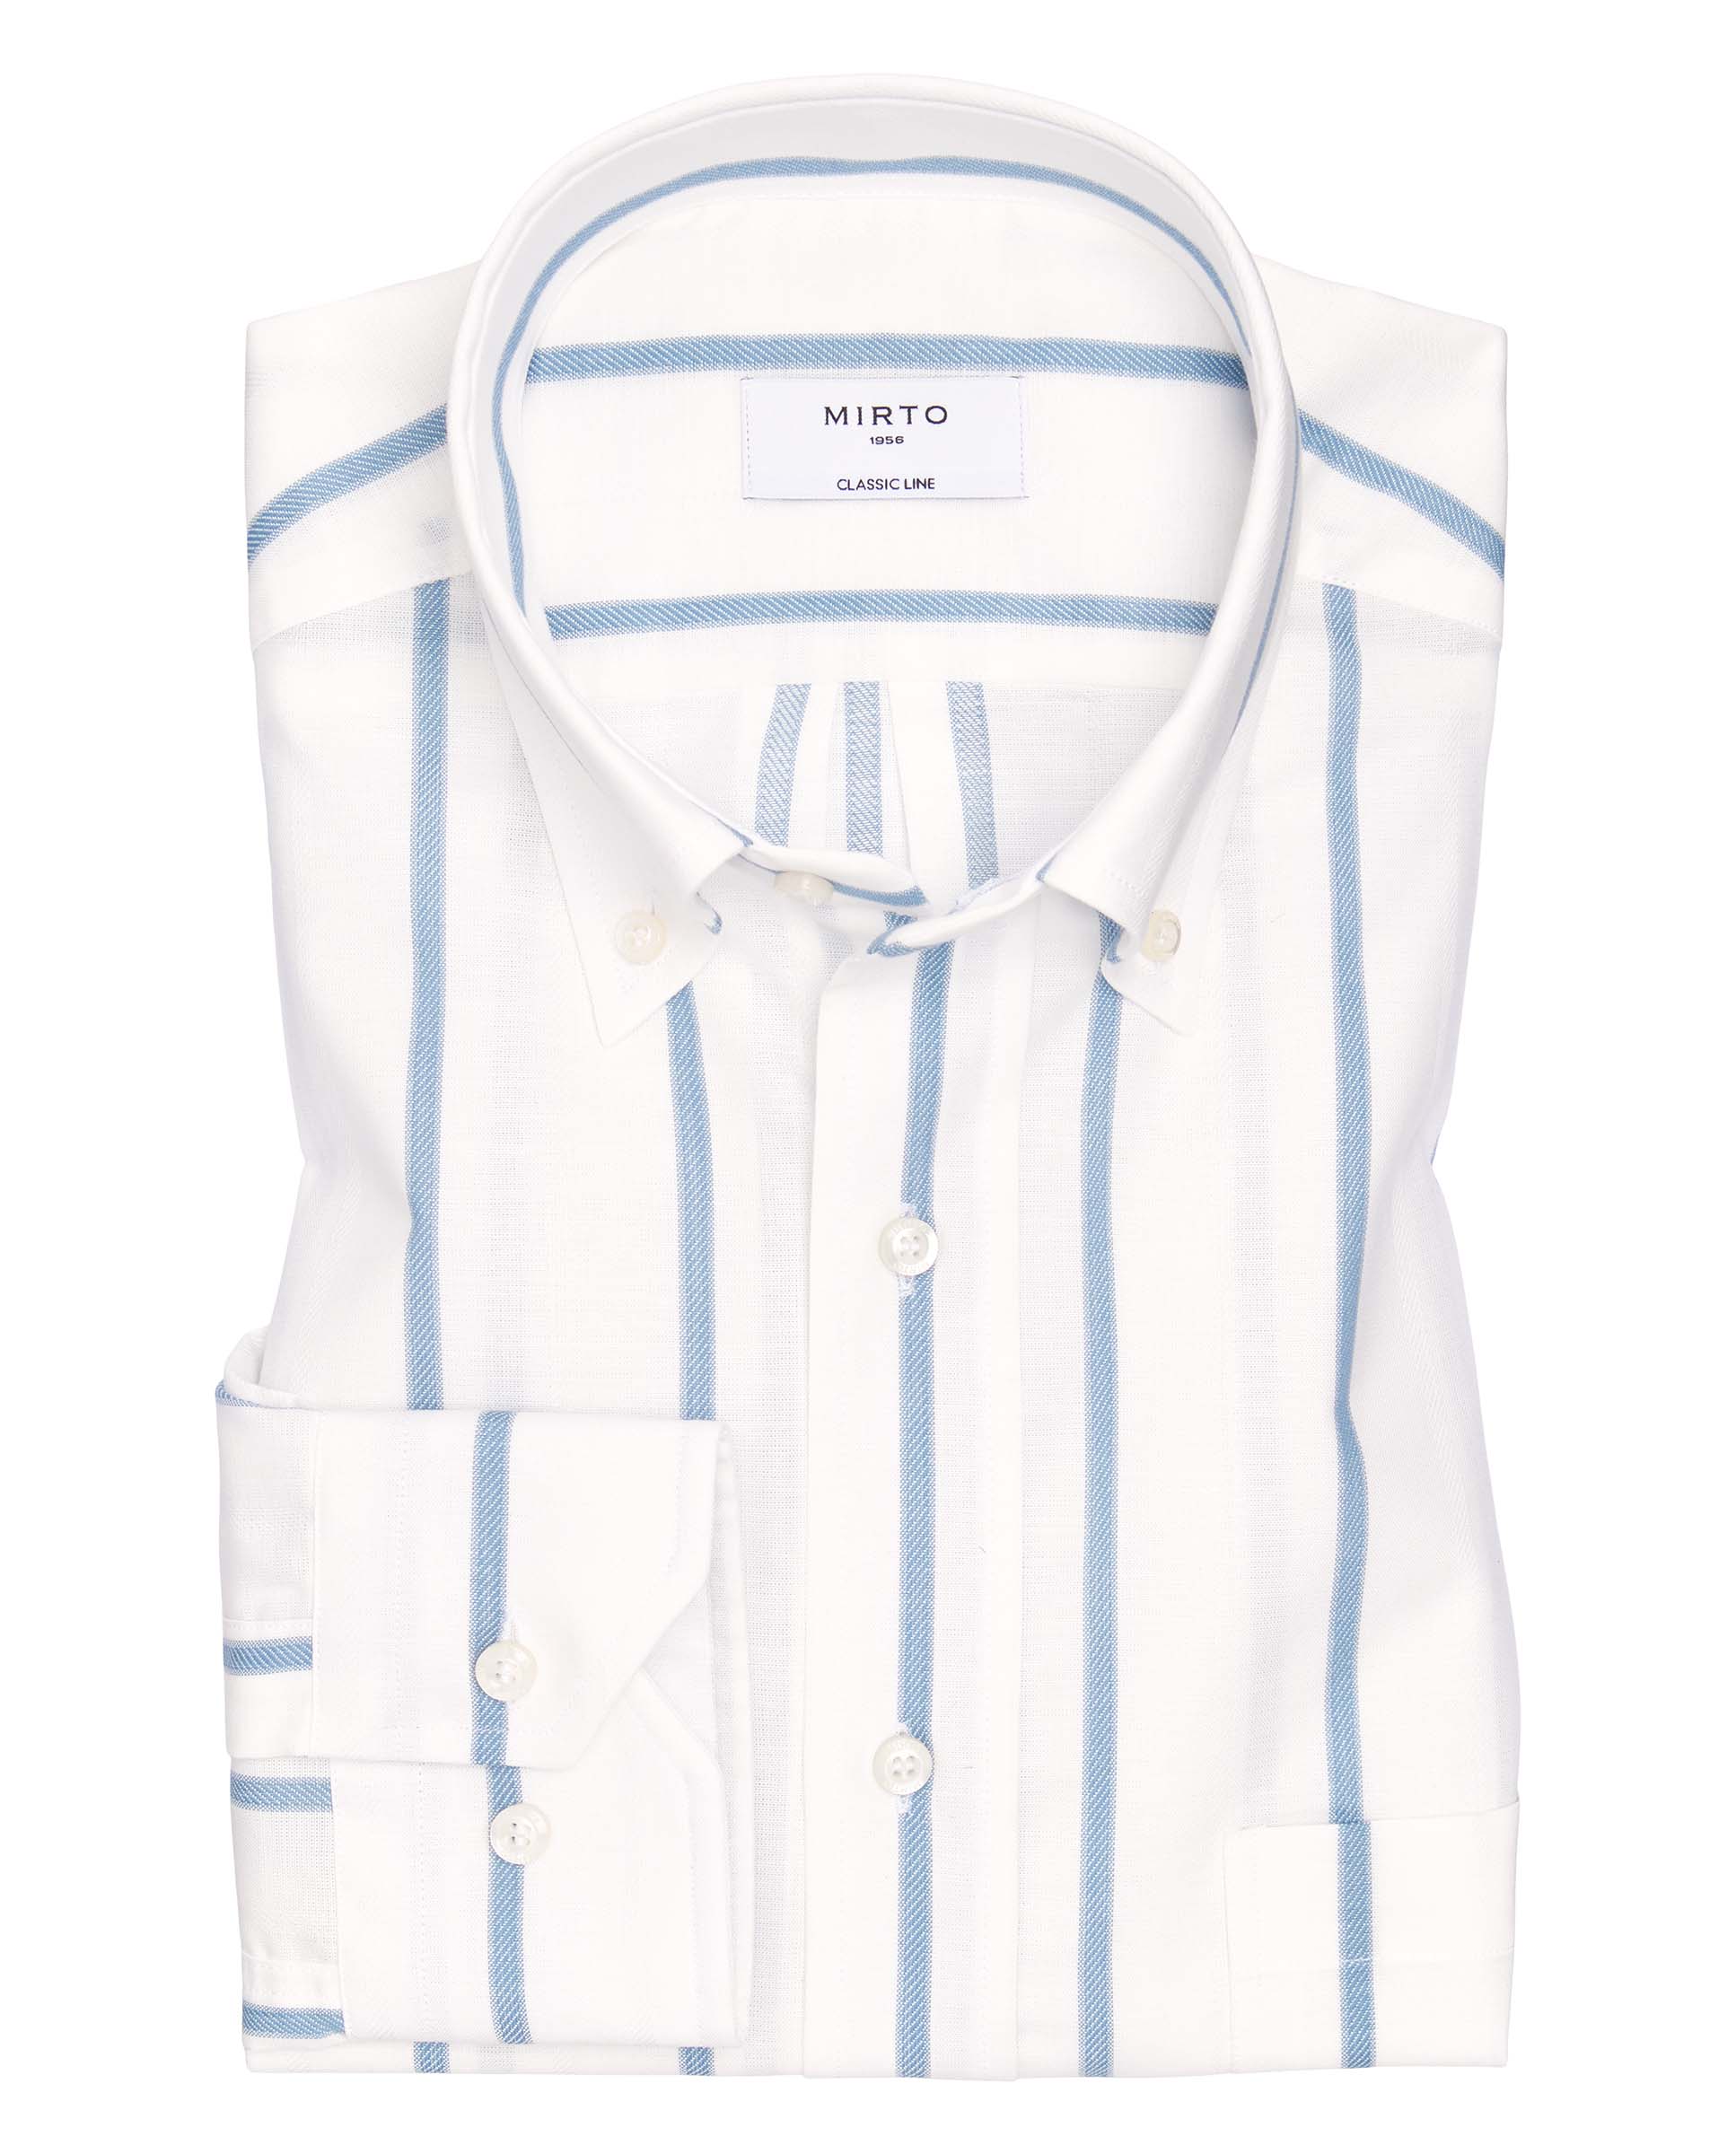 Camisa casual de algodón rayas azul y blanco by MI